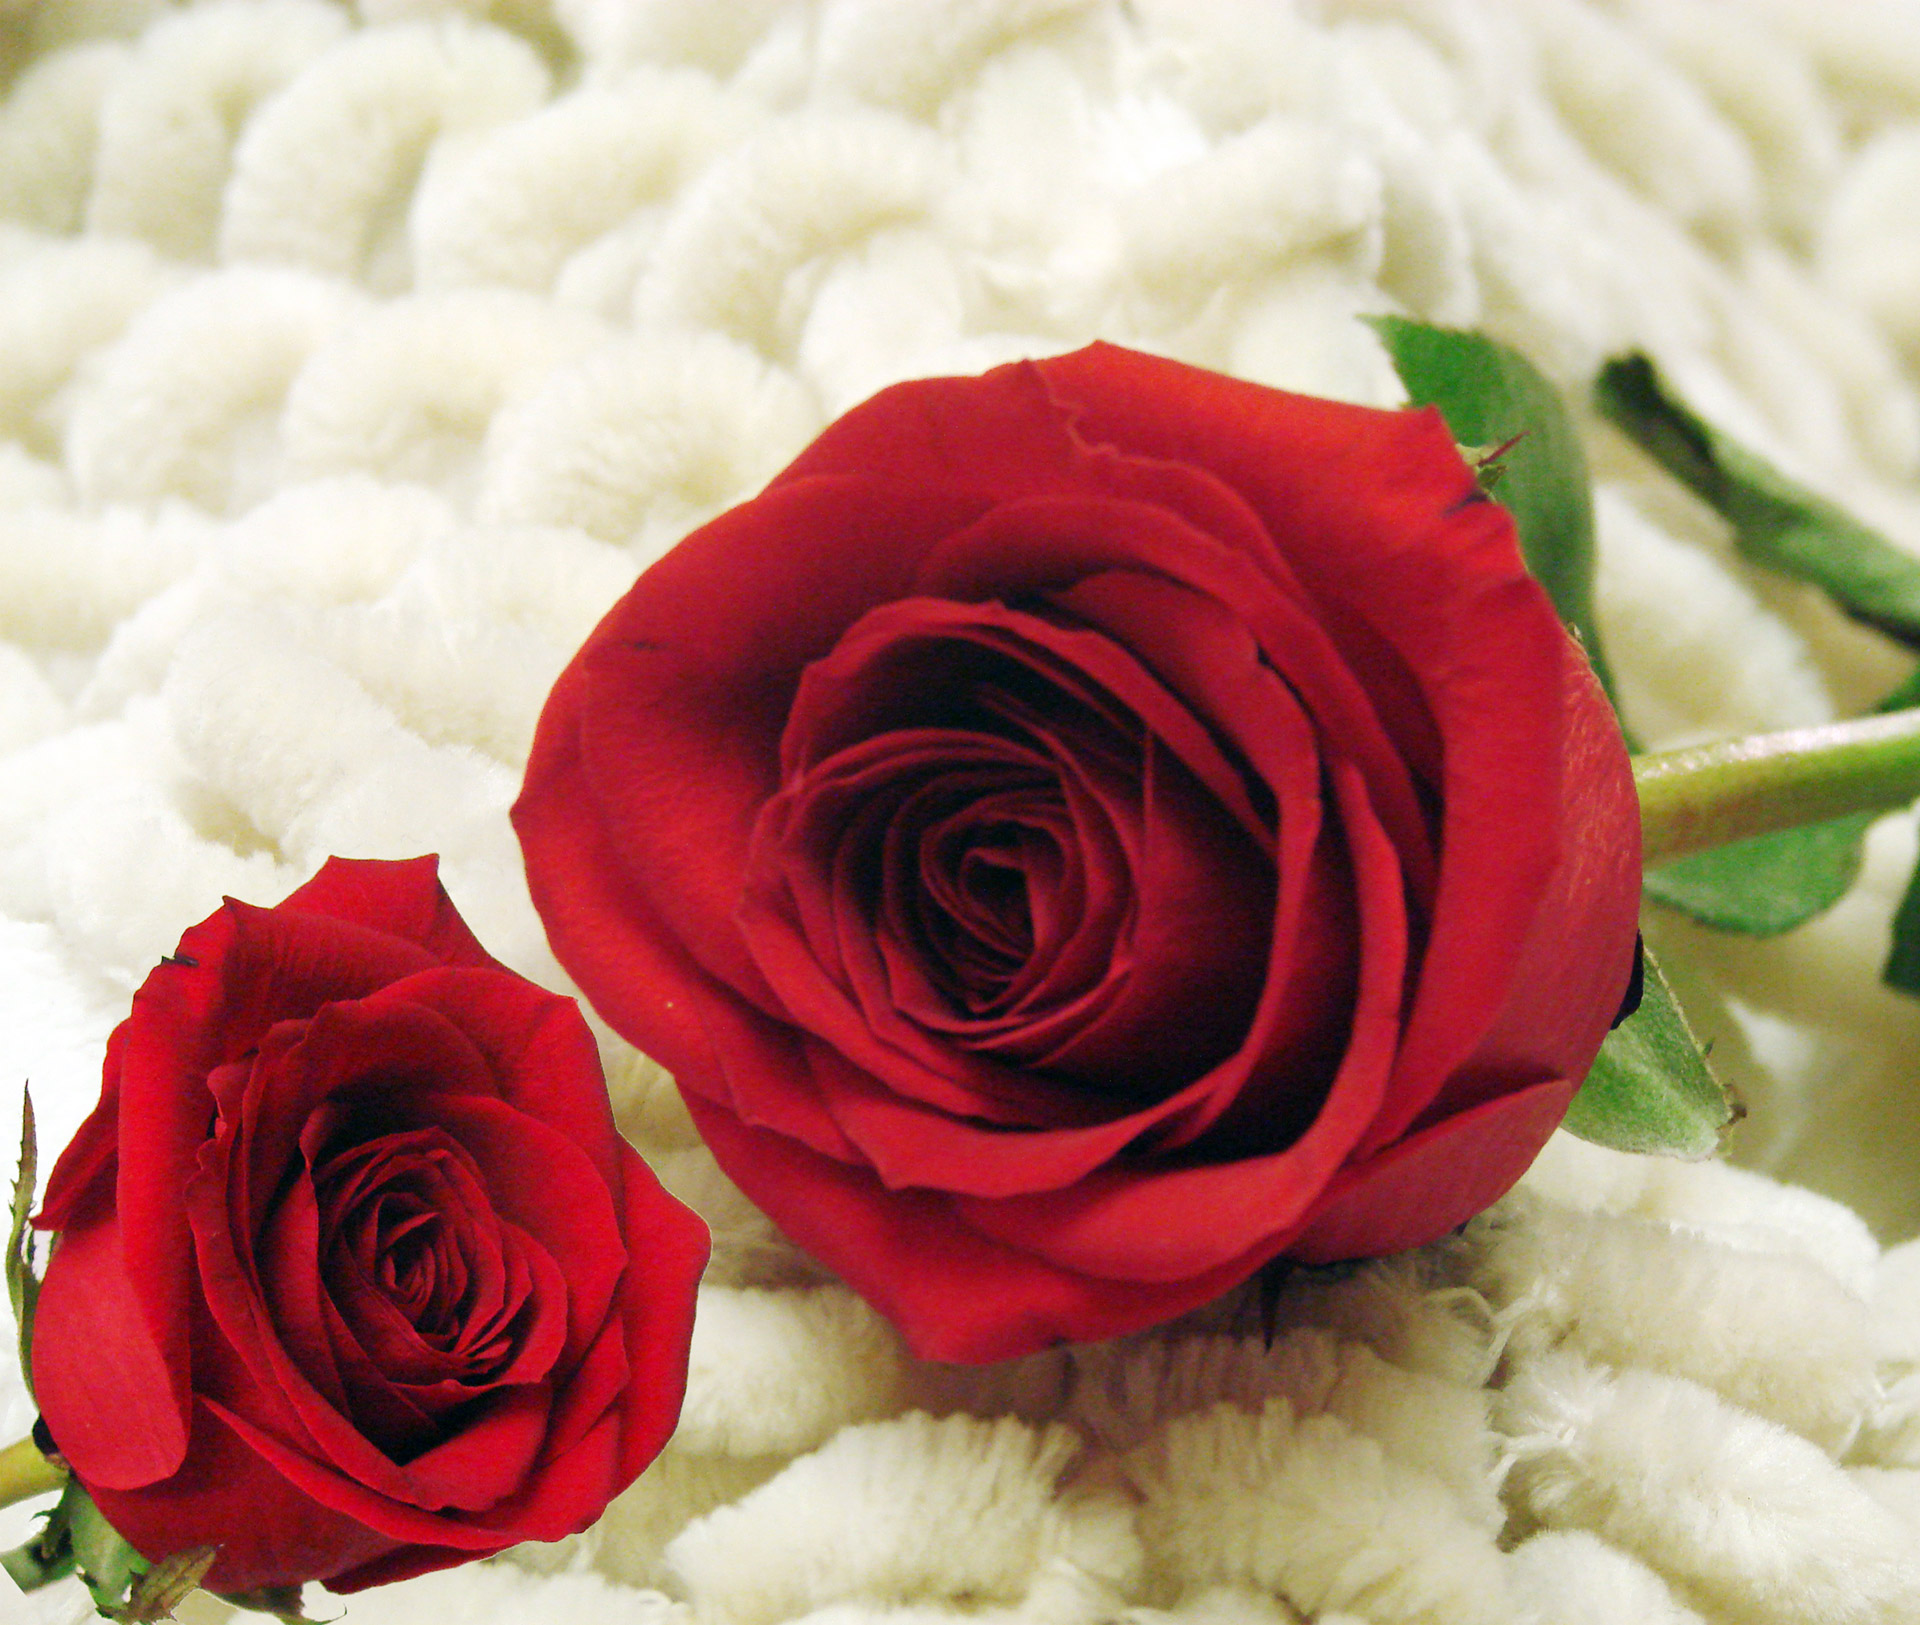 Gul yuzim. Красные розы. Цветы розы красные. Две красные розы. Розы красные и белые.